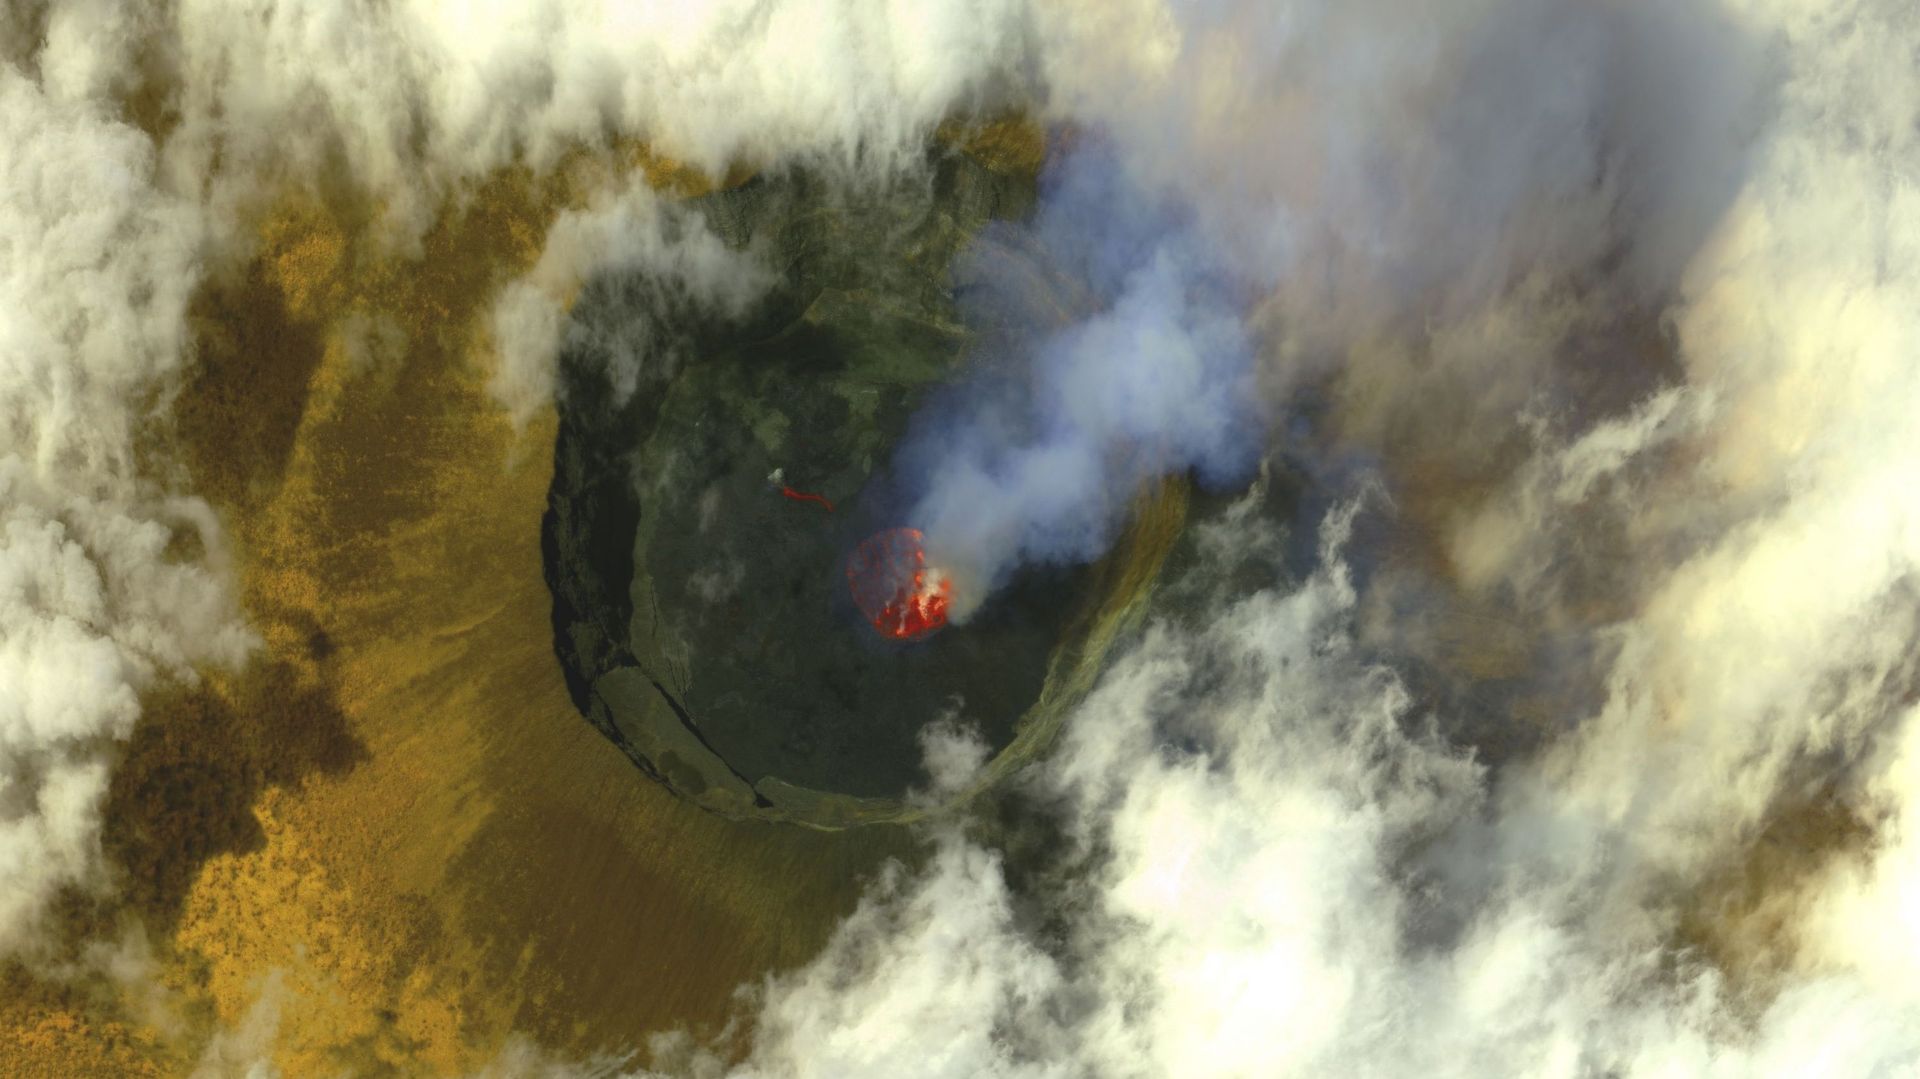 Image satellite du volcan Nyiragongo en éruption, qui occasionne toujours de nombreuses secousses dans la région de Goma